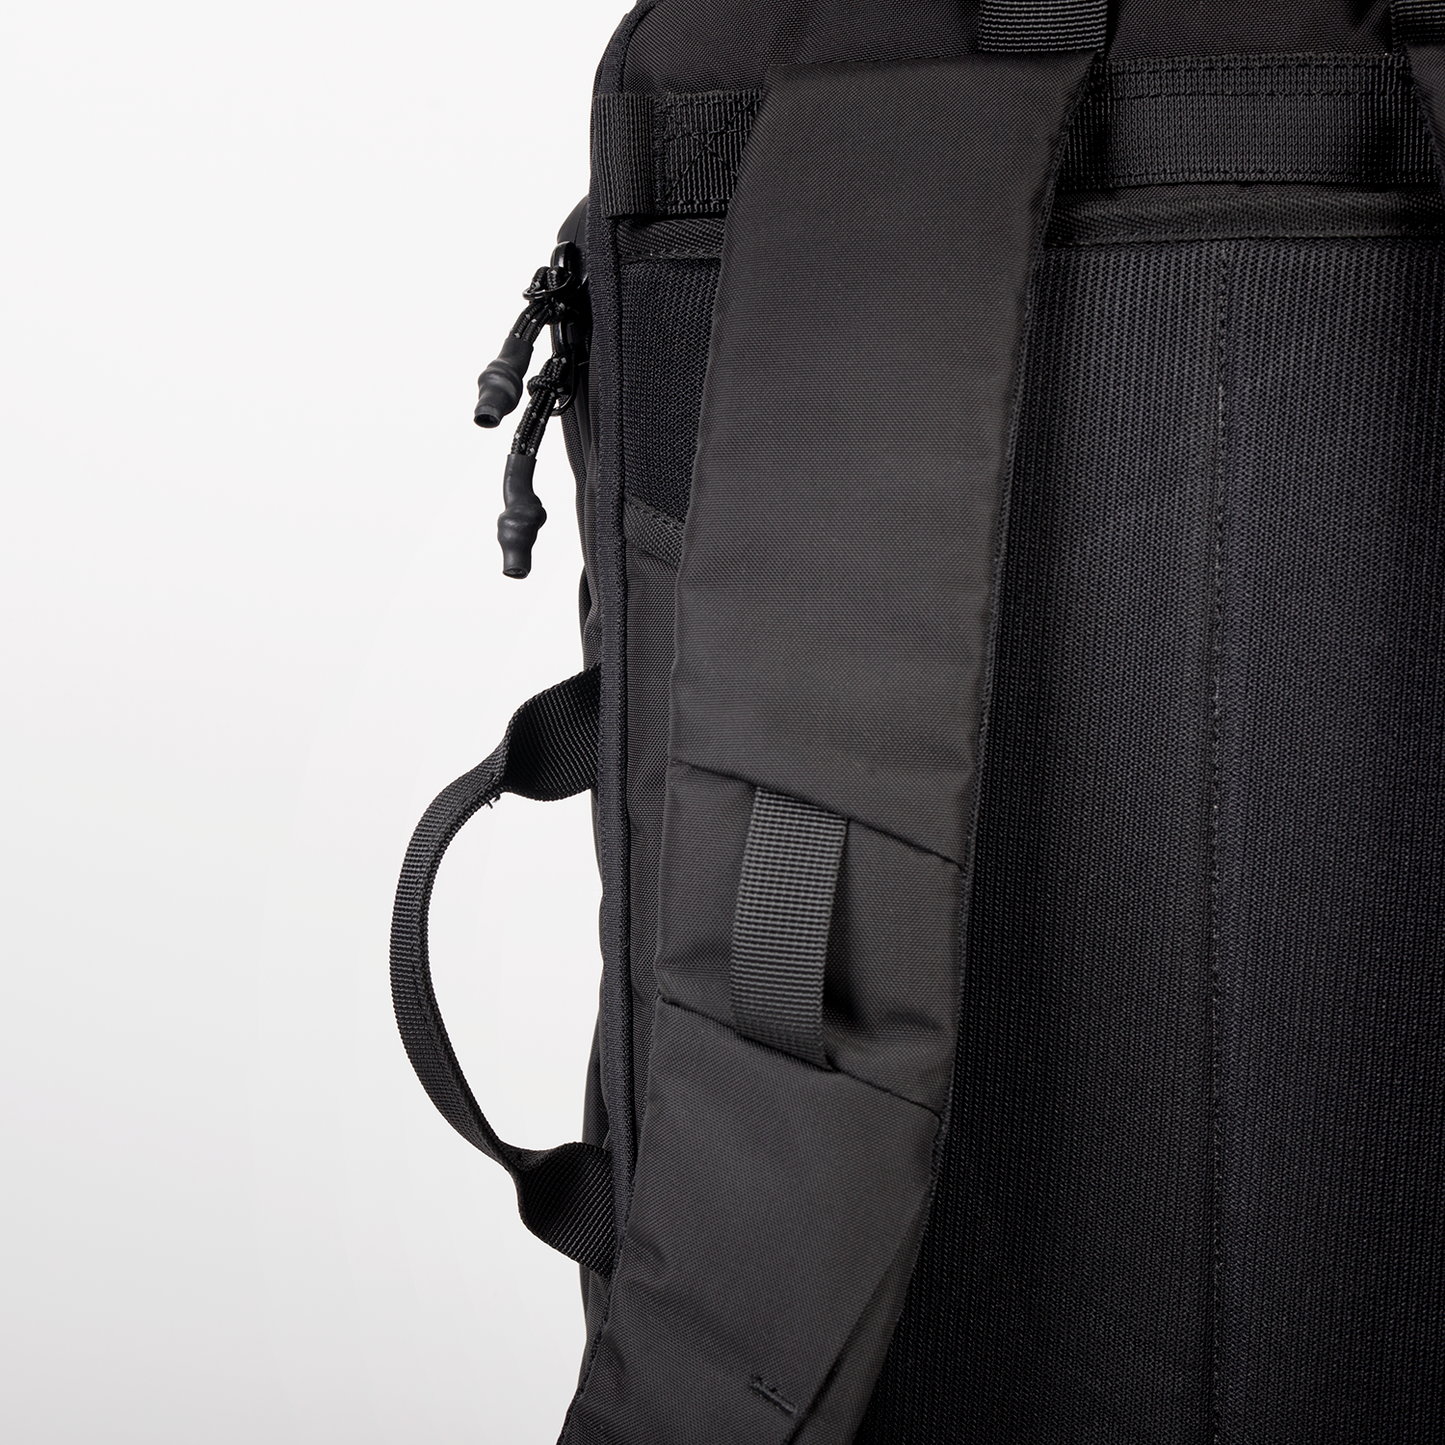 Sturdy Backpack